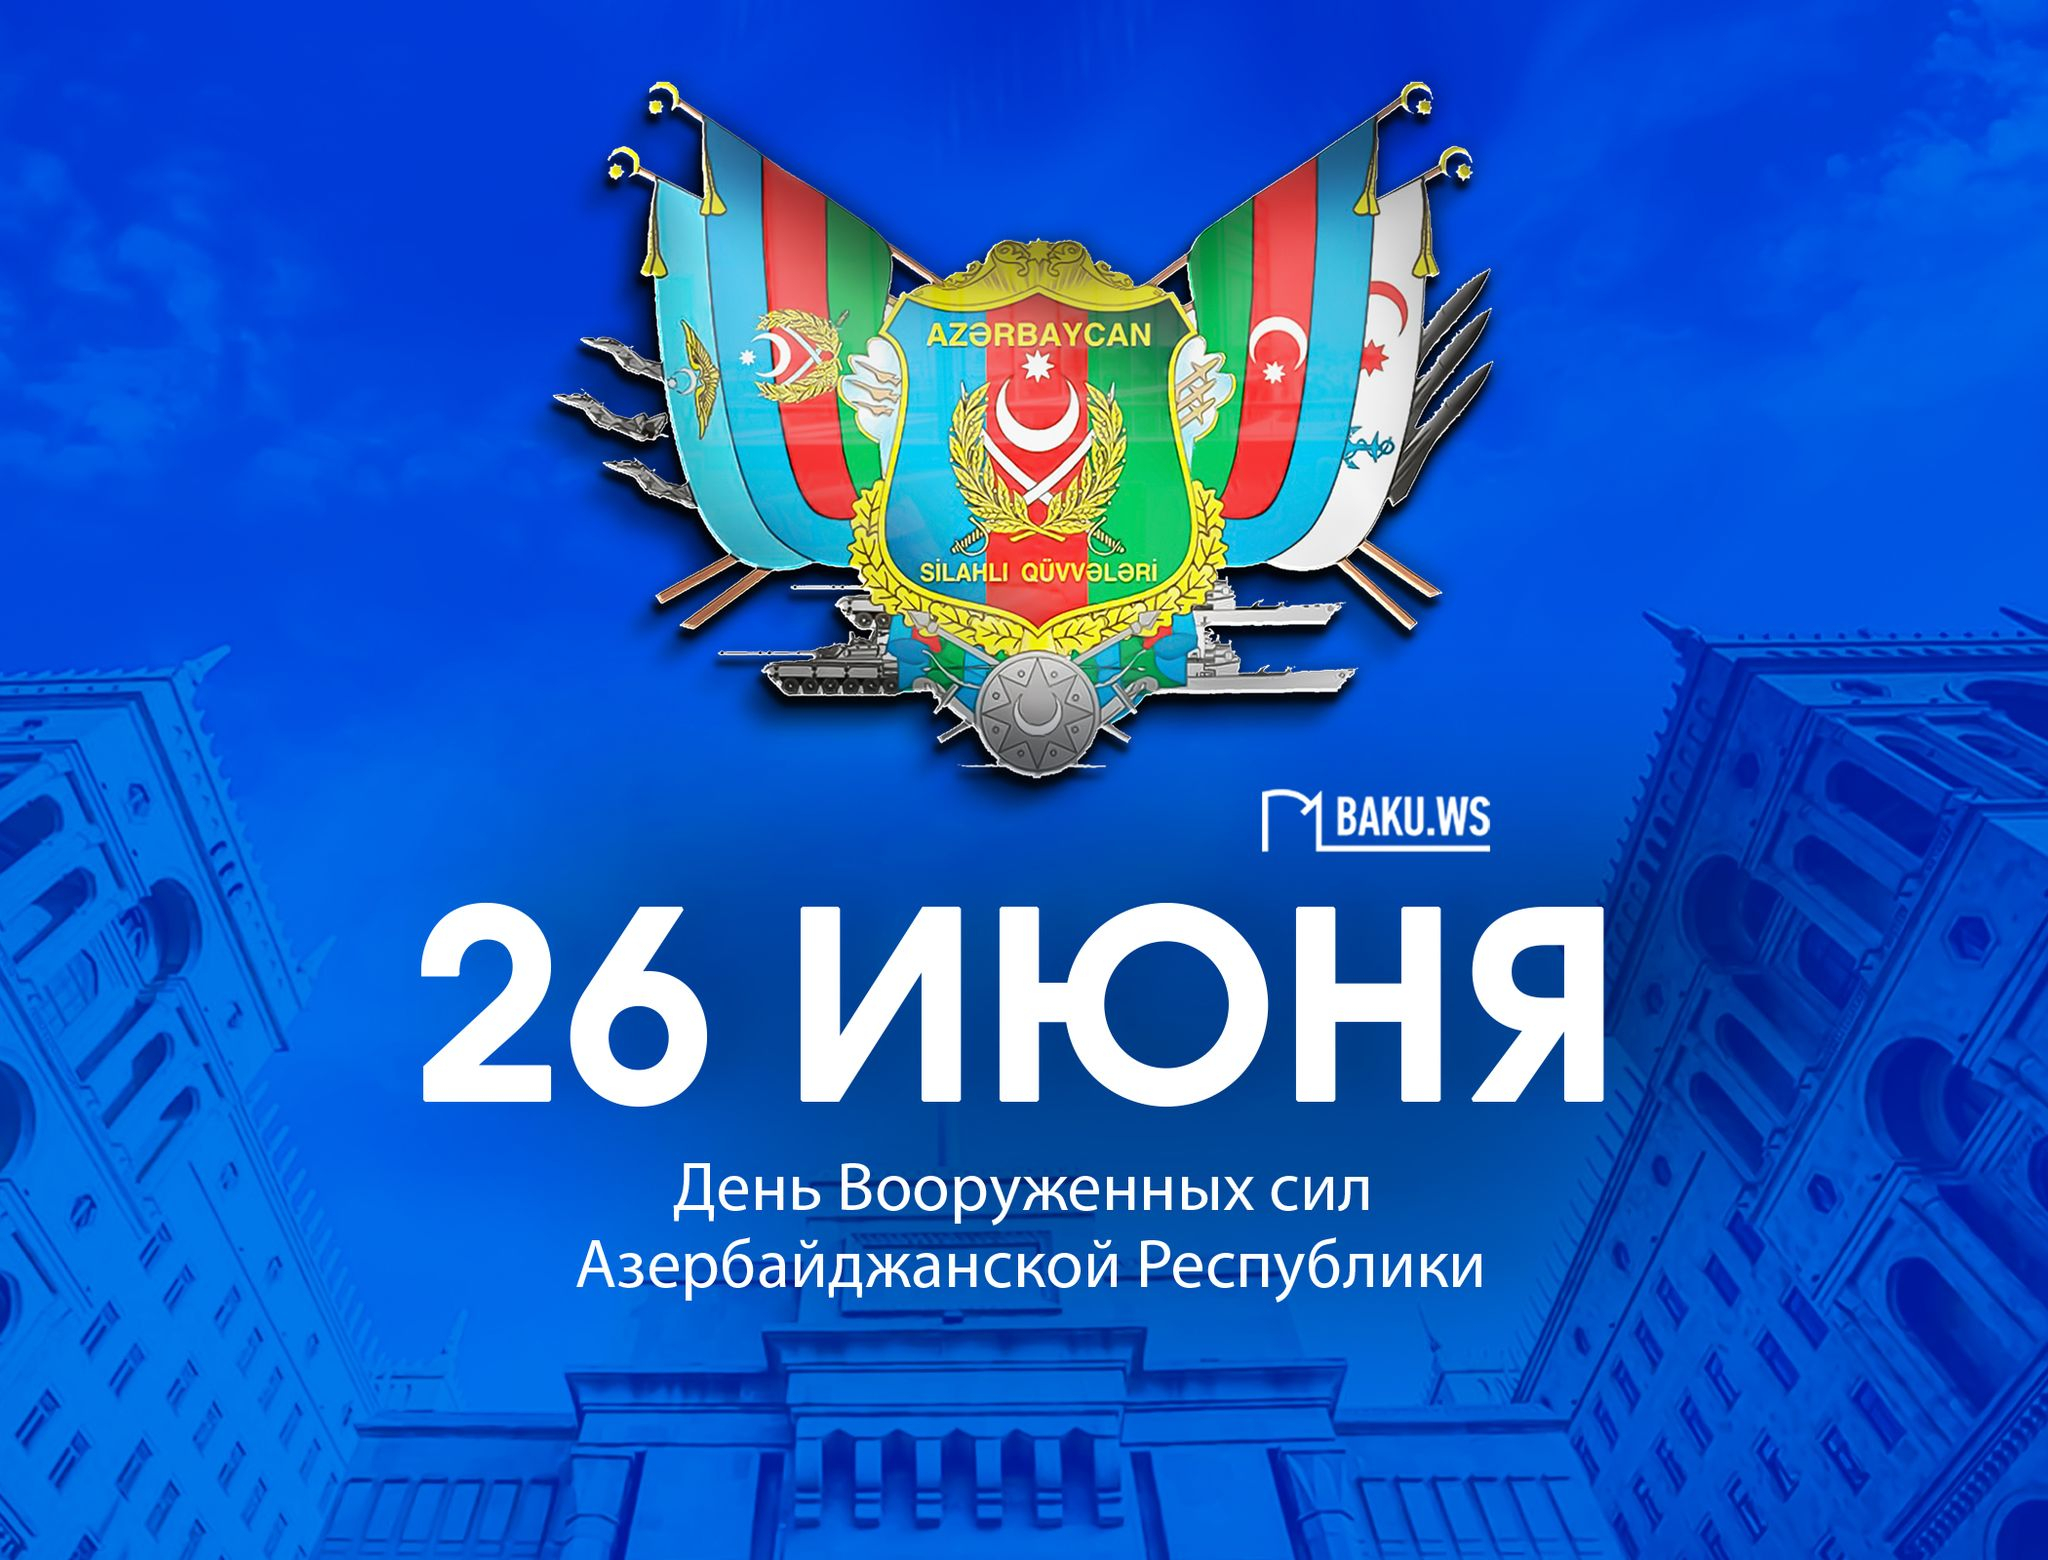 В Азербайджане отмечается 105-я годовщина со дня создания Вооруженных сил